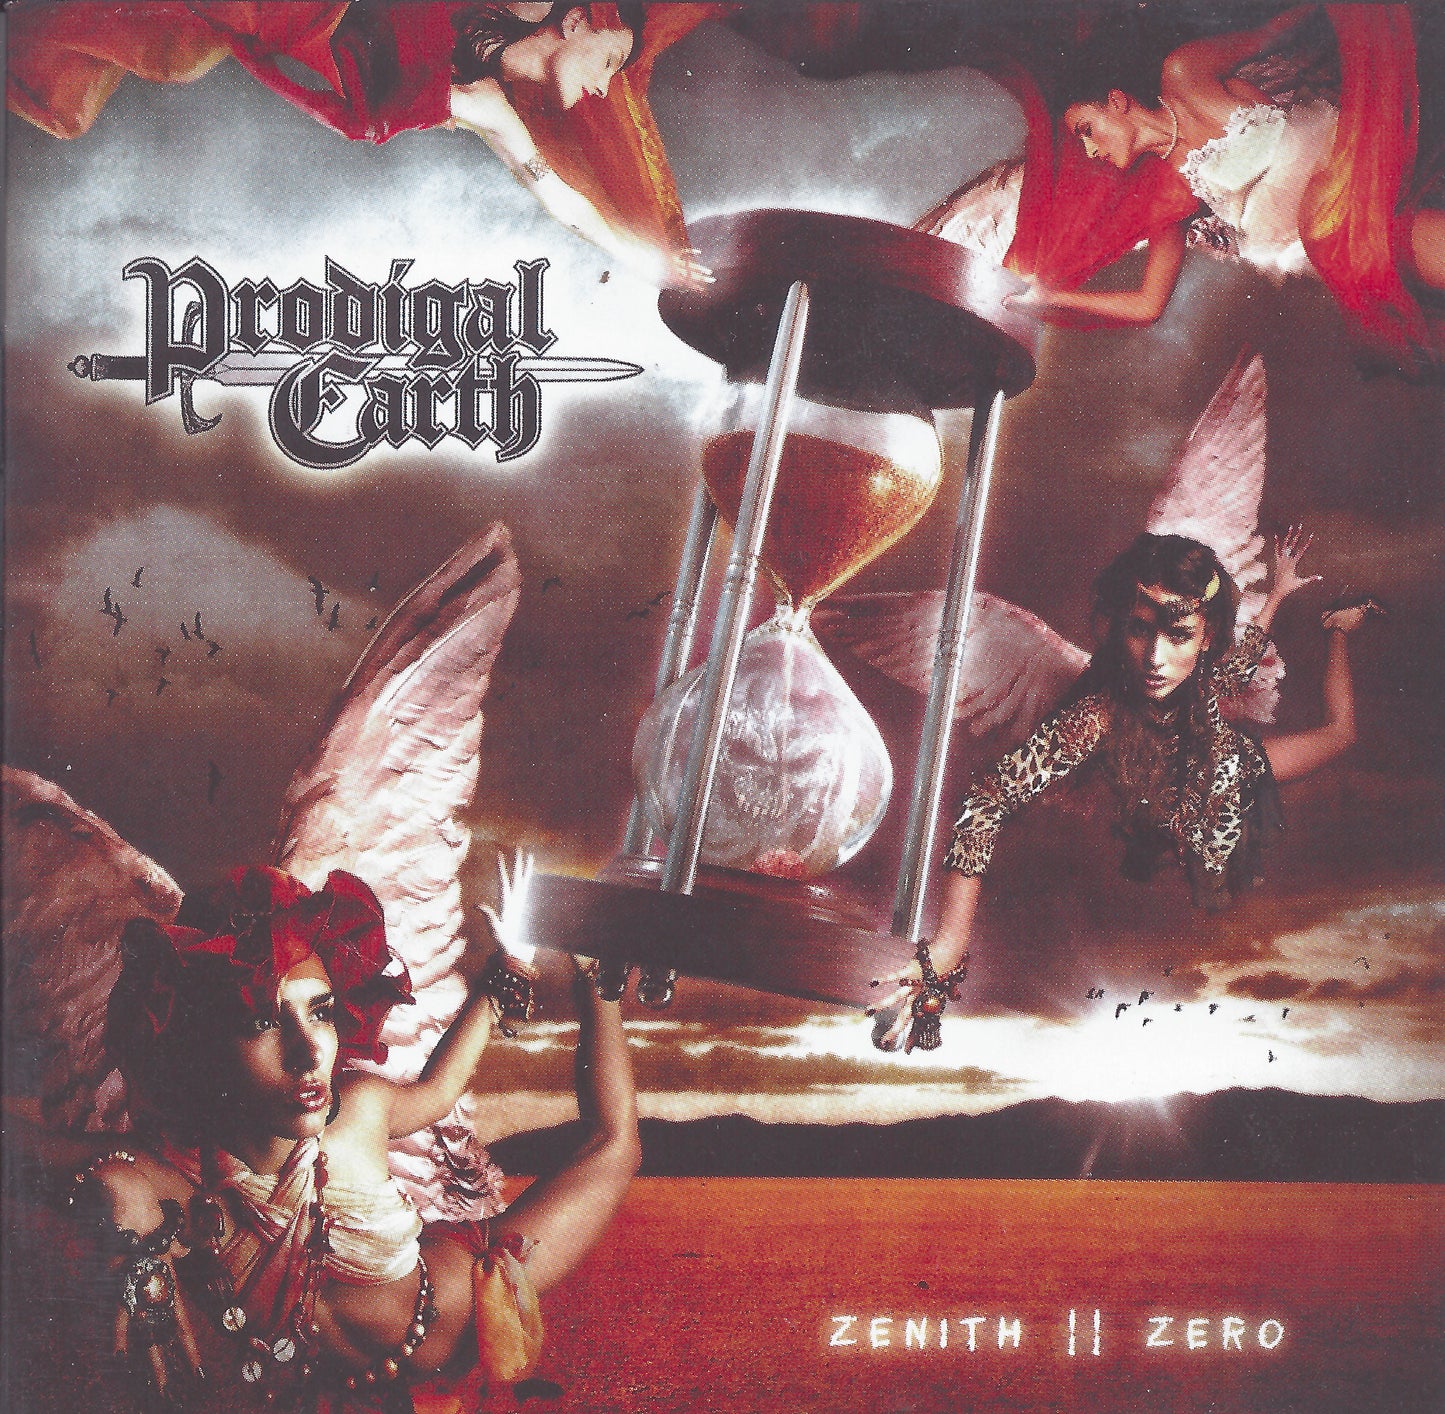 Prodigal Earth - Zenith II Zero CD